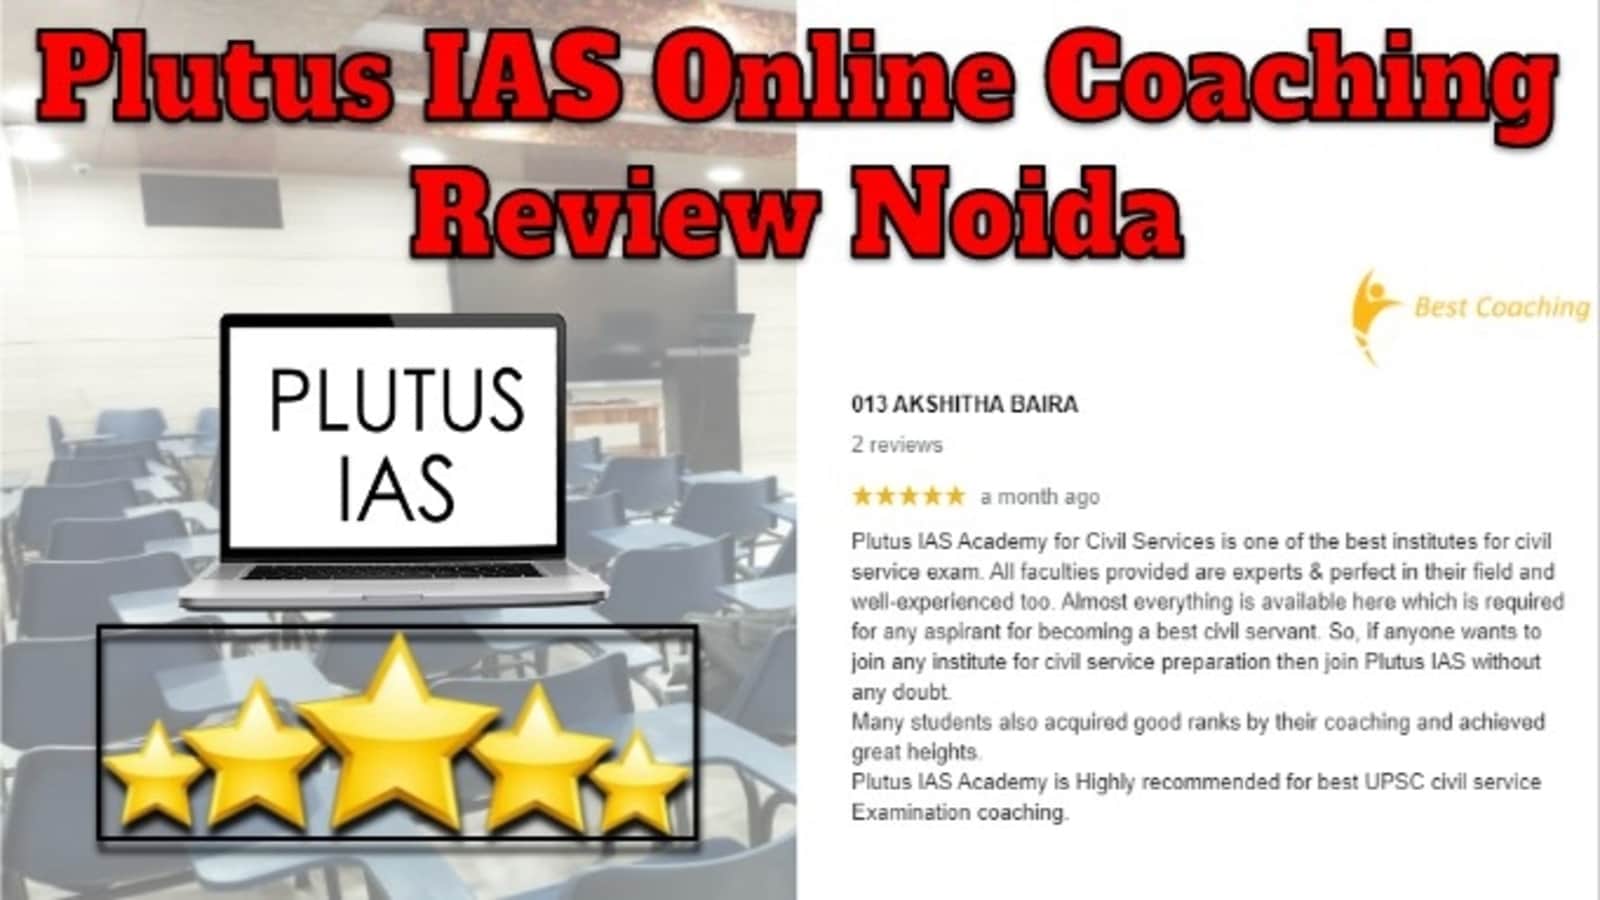 Plutus IAS Online Coaching Review Noida